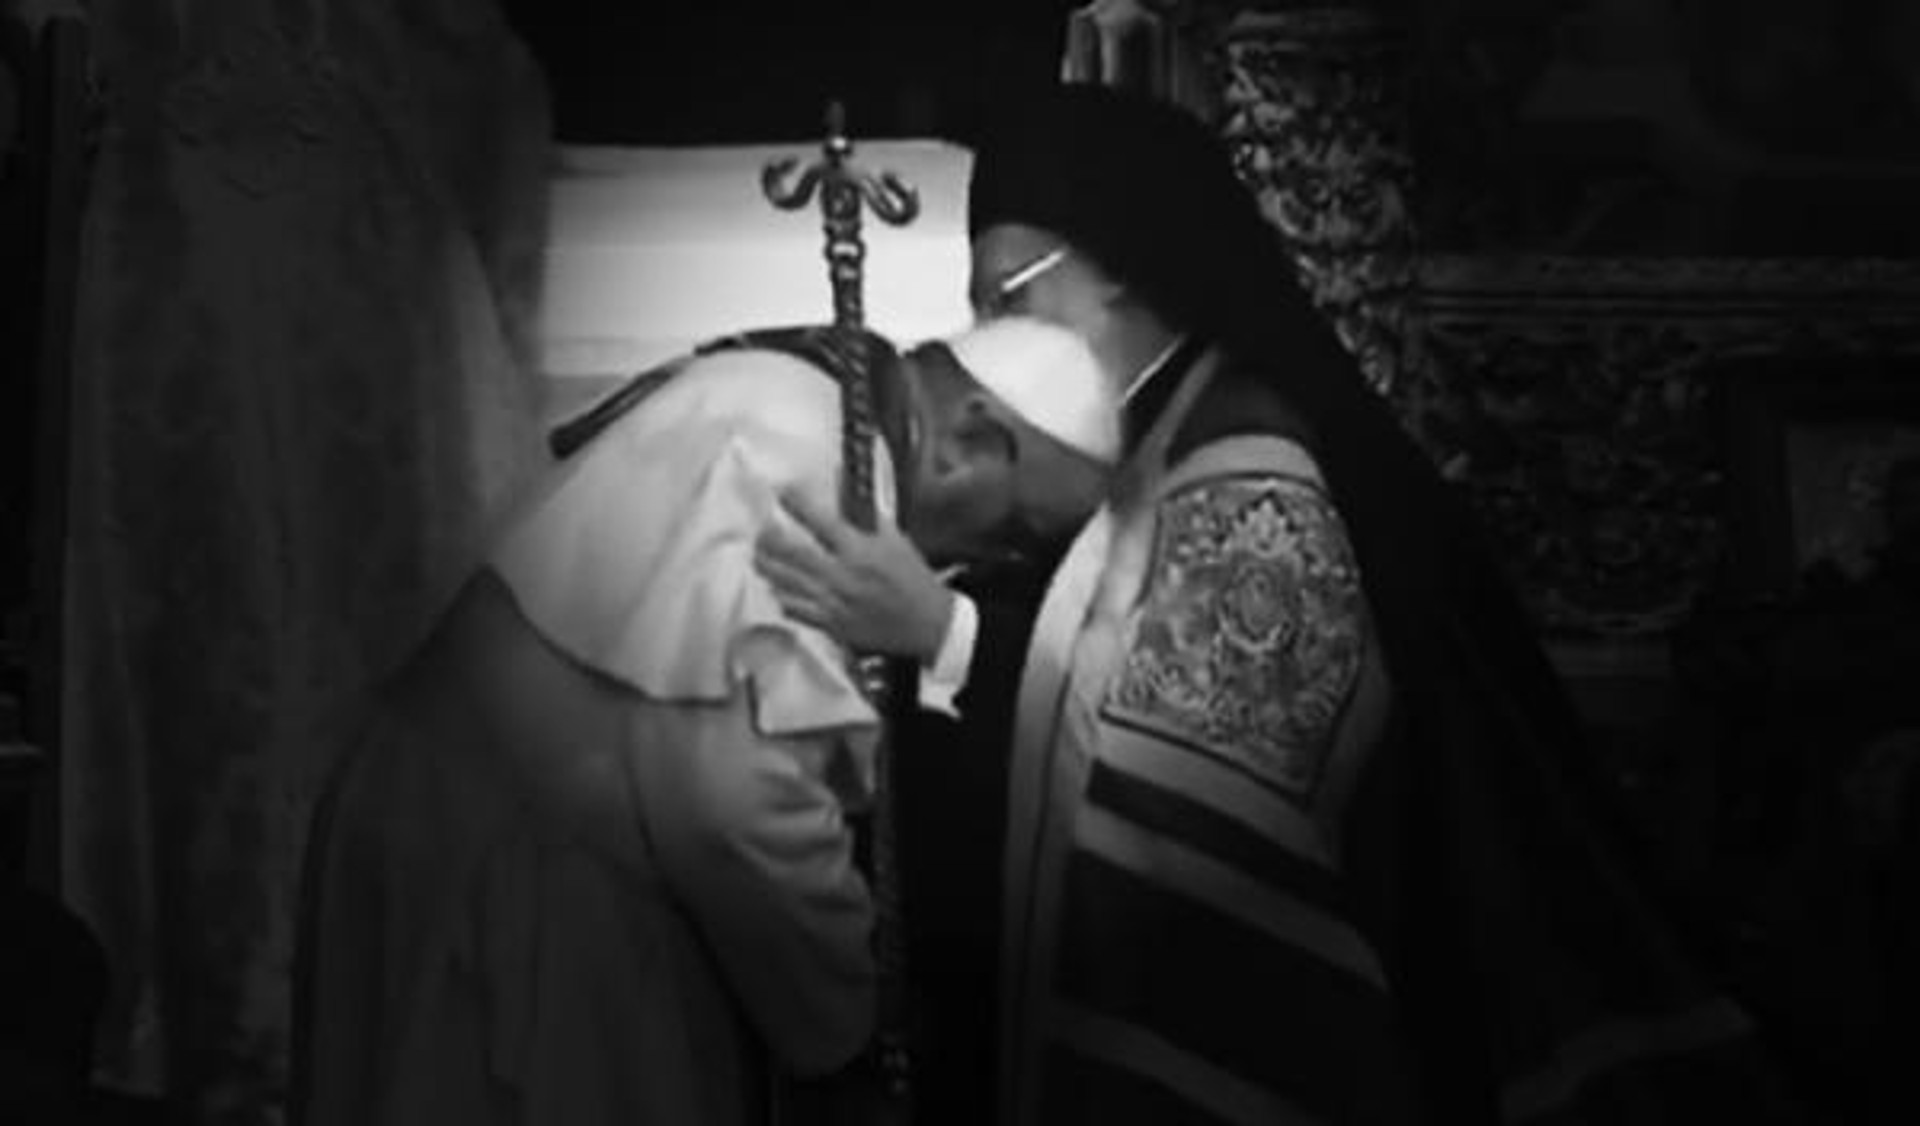 Le pape François reçoit la bénédiction du patriarche orthodoxe Bartholomée (Photo: CTV)
